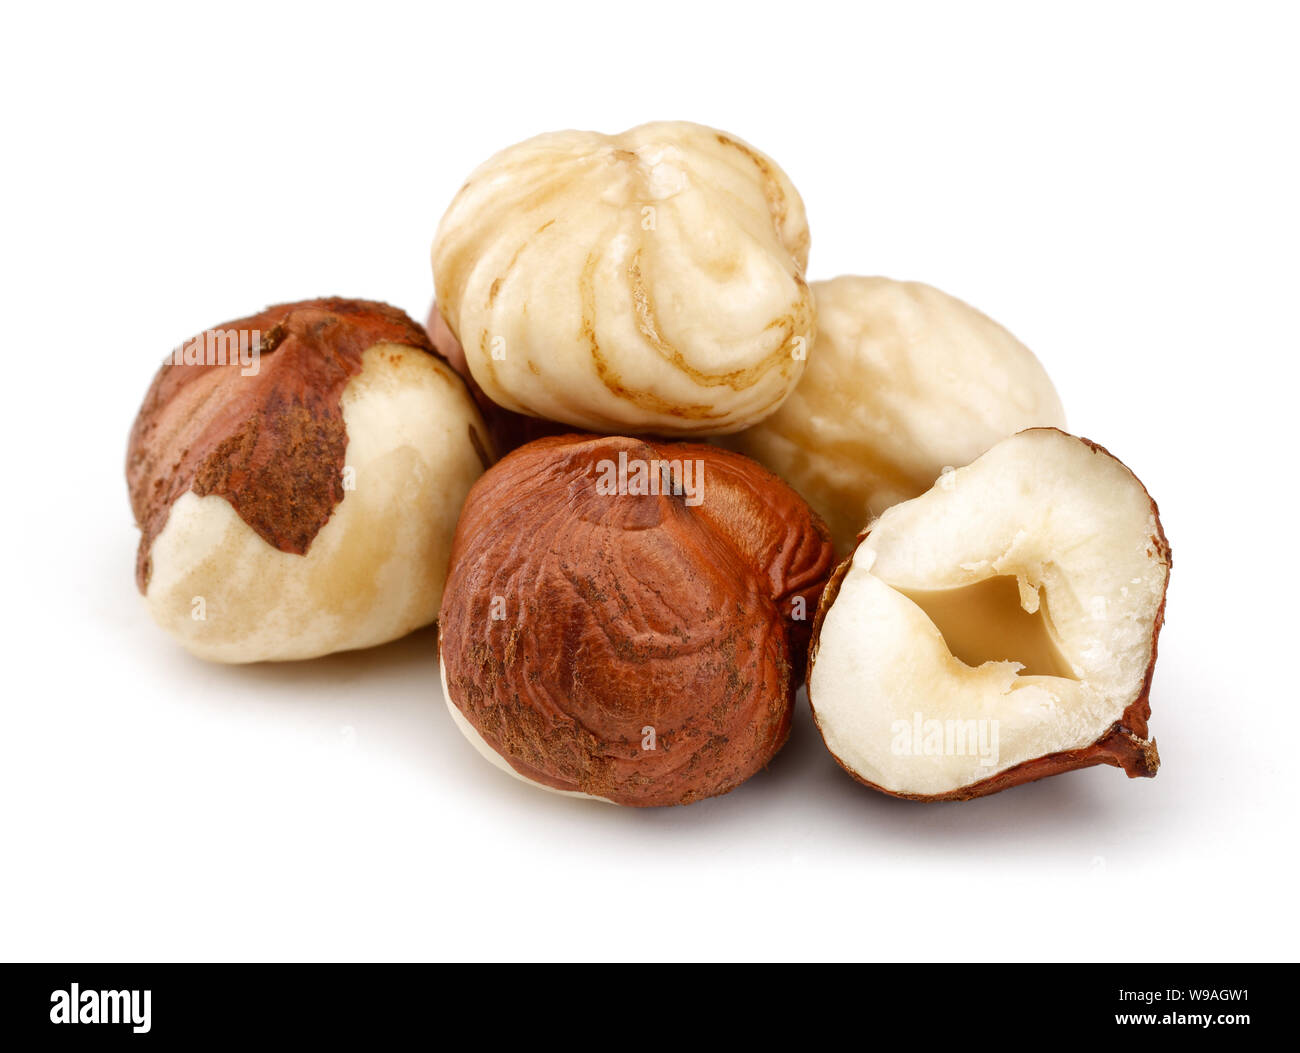 Group of hazelnuts isolated on white background Stock Photo